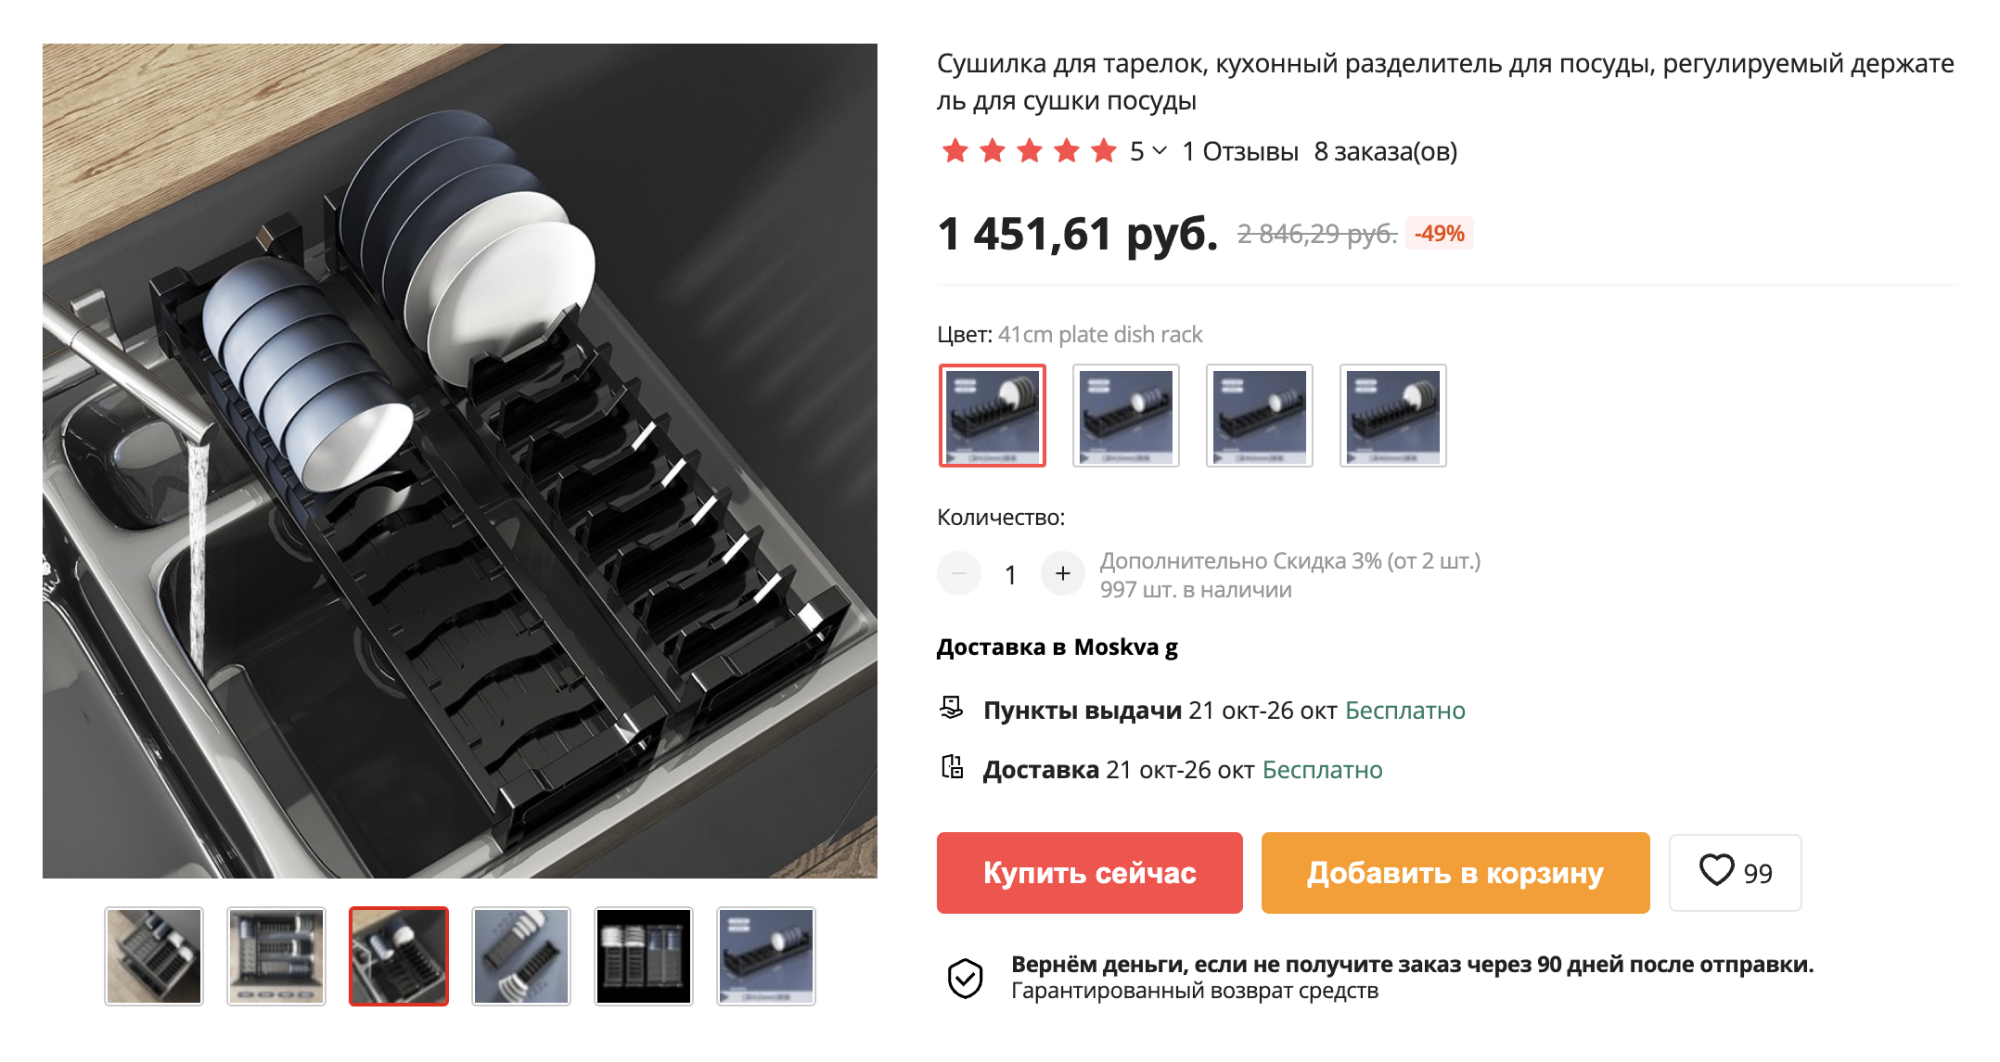 Сушилка-подставка, чтобы хранить тарелки вертикально в ящиках. Источник: aliexpress.ru